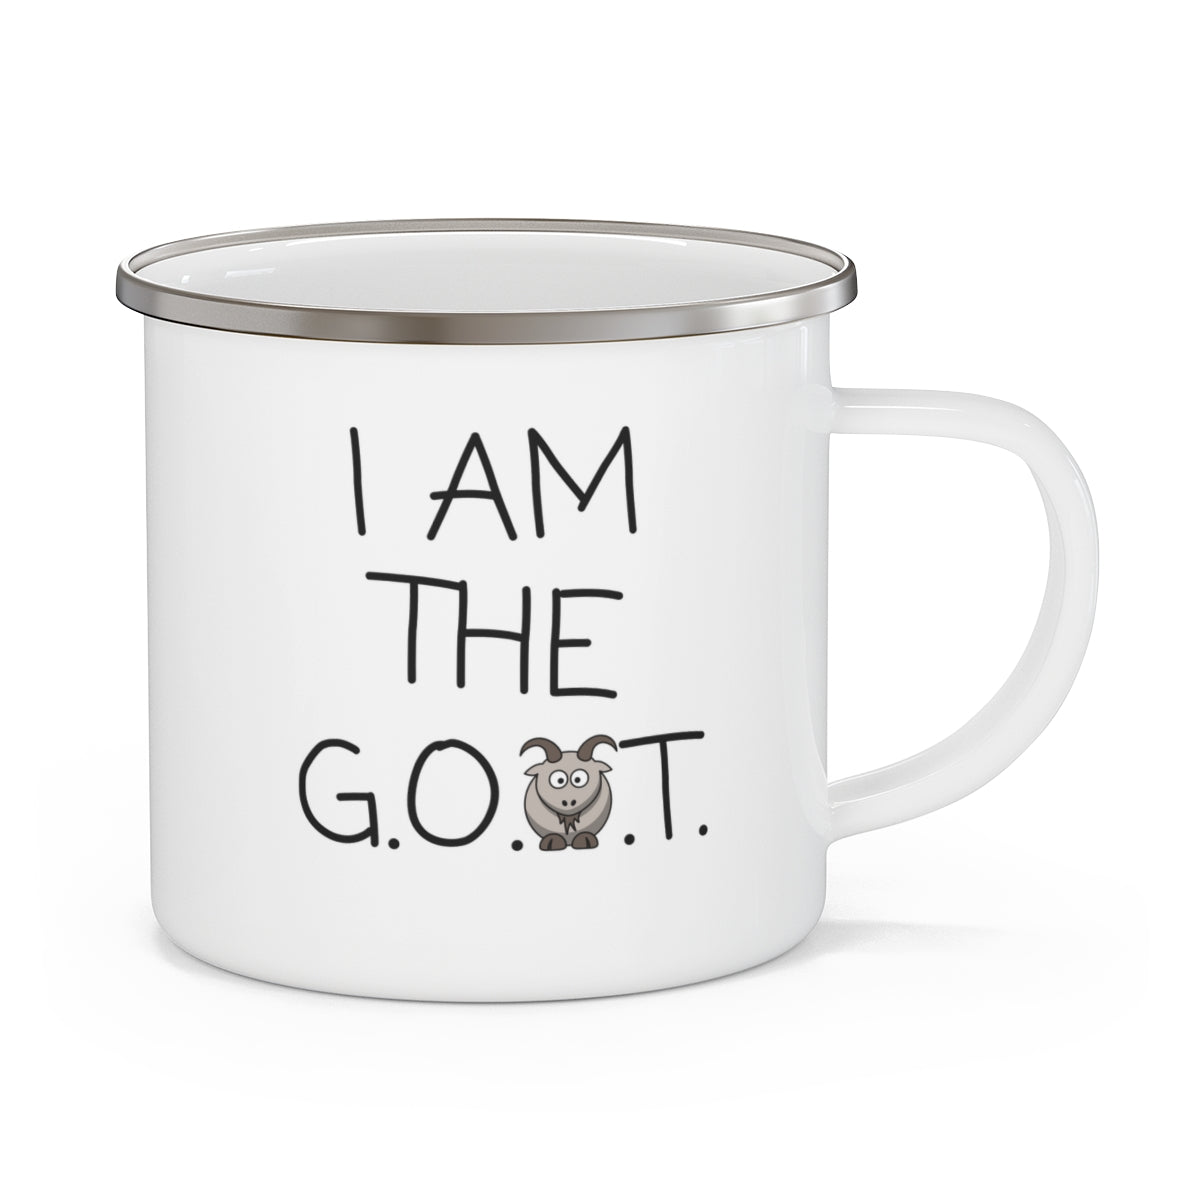 I.am.goat - Enamel Mug